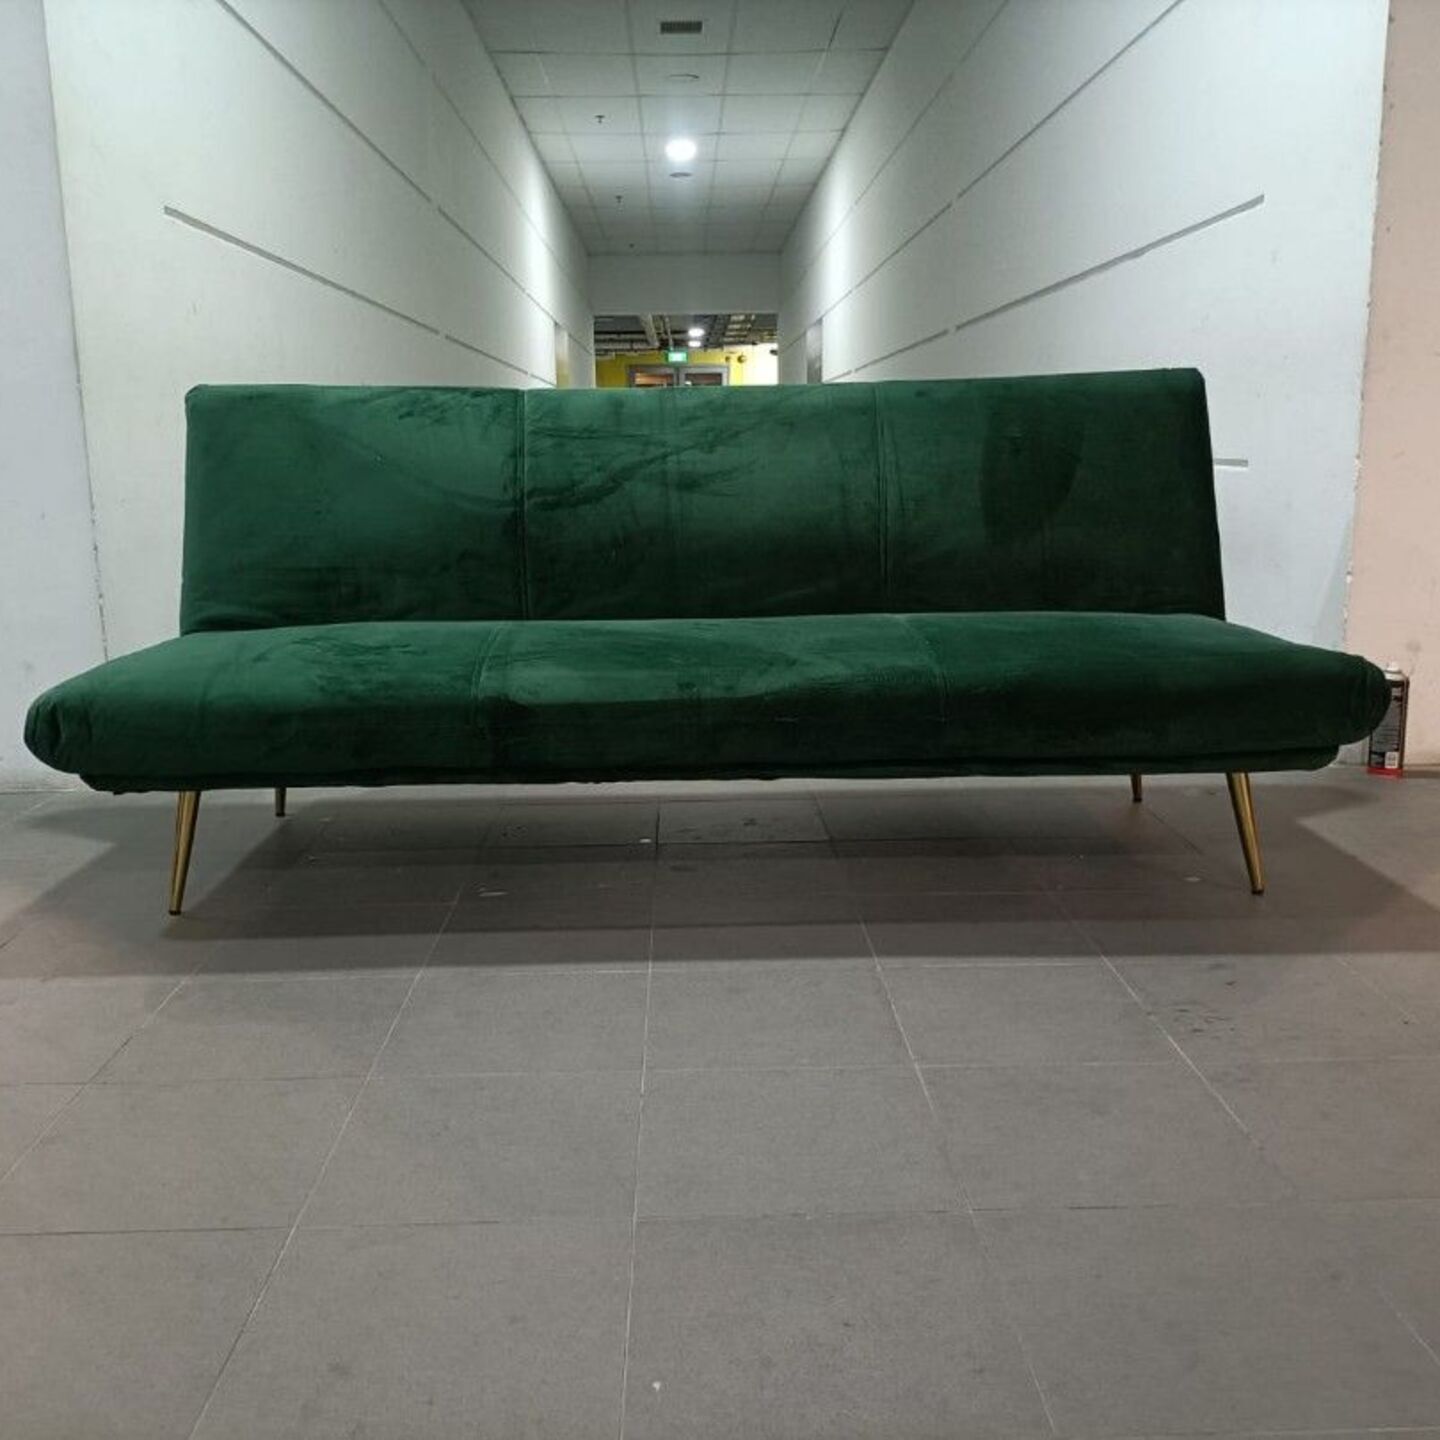 PULSER 3 Seater Sofa Bed in EMERALD GREEN VELVET